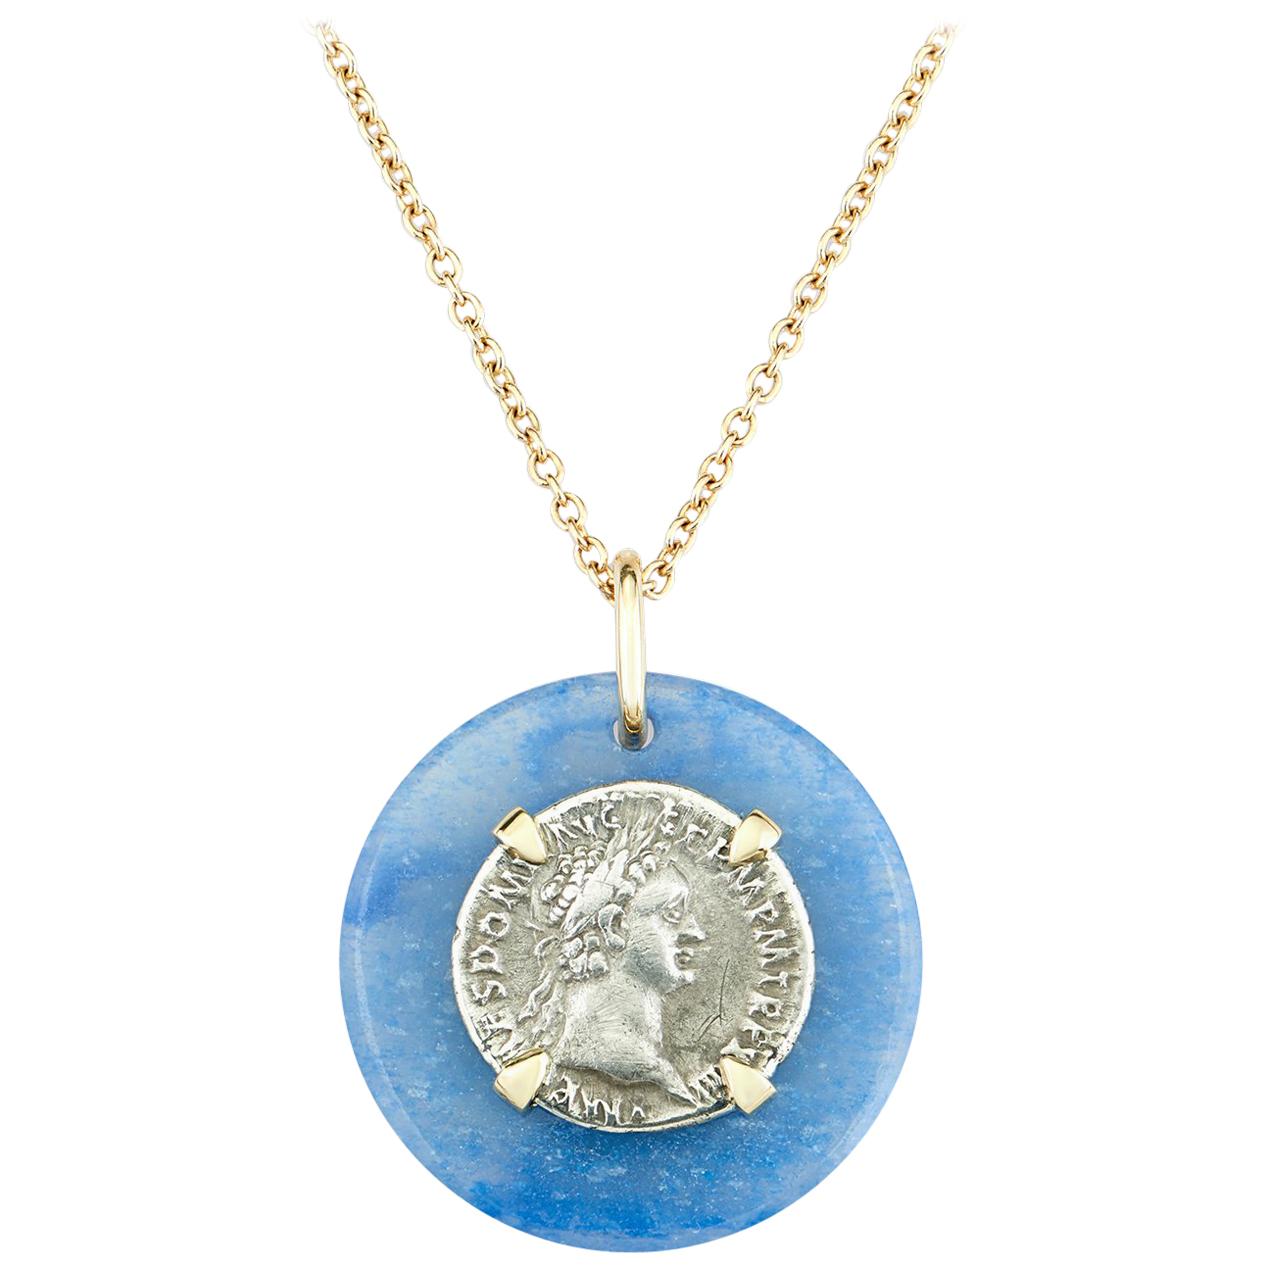 Dubini, collier en or 18 carats avec médaillon en quartz bleu et ancienne pièce de monnaie domitienne en argent